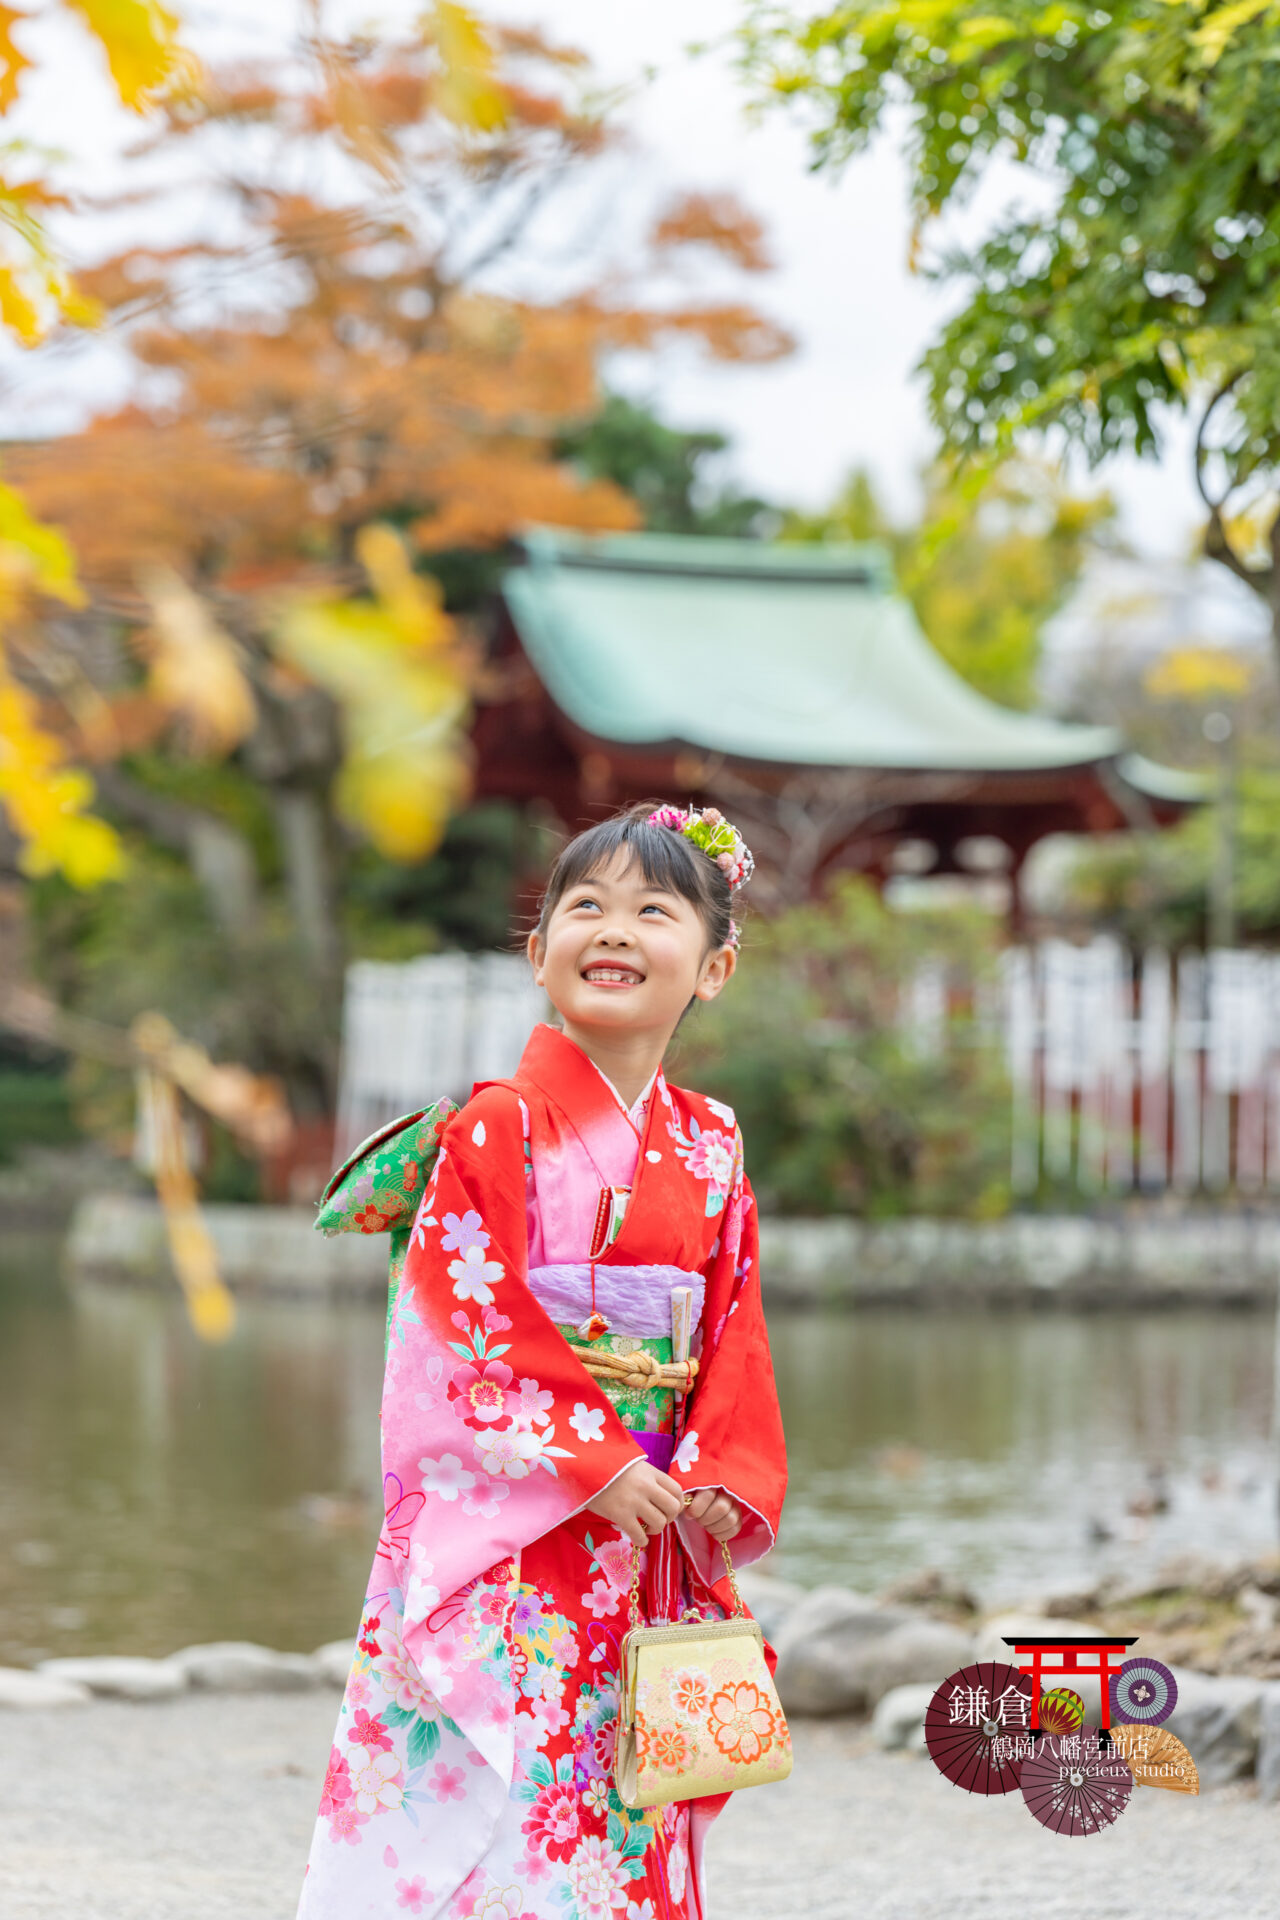 鎌倉で七五三写真の出張撮影 赤い着物の女の子